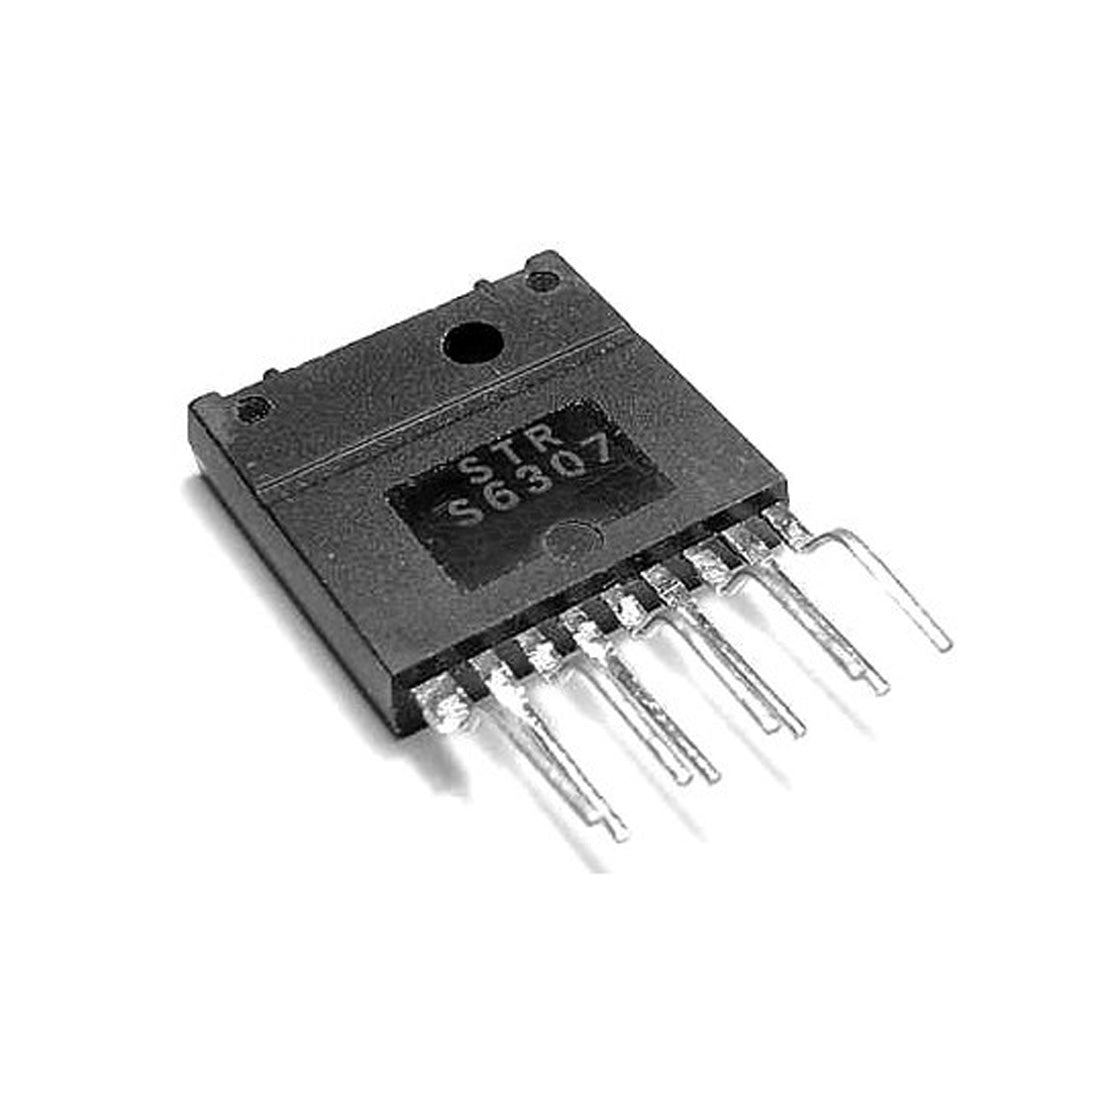 STRS6307 componente elettronico, circuito integrato, transistor, 9 contatti